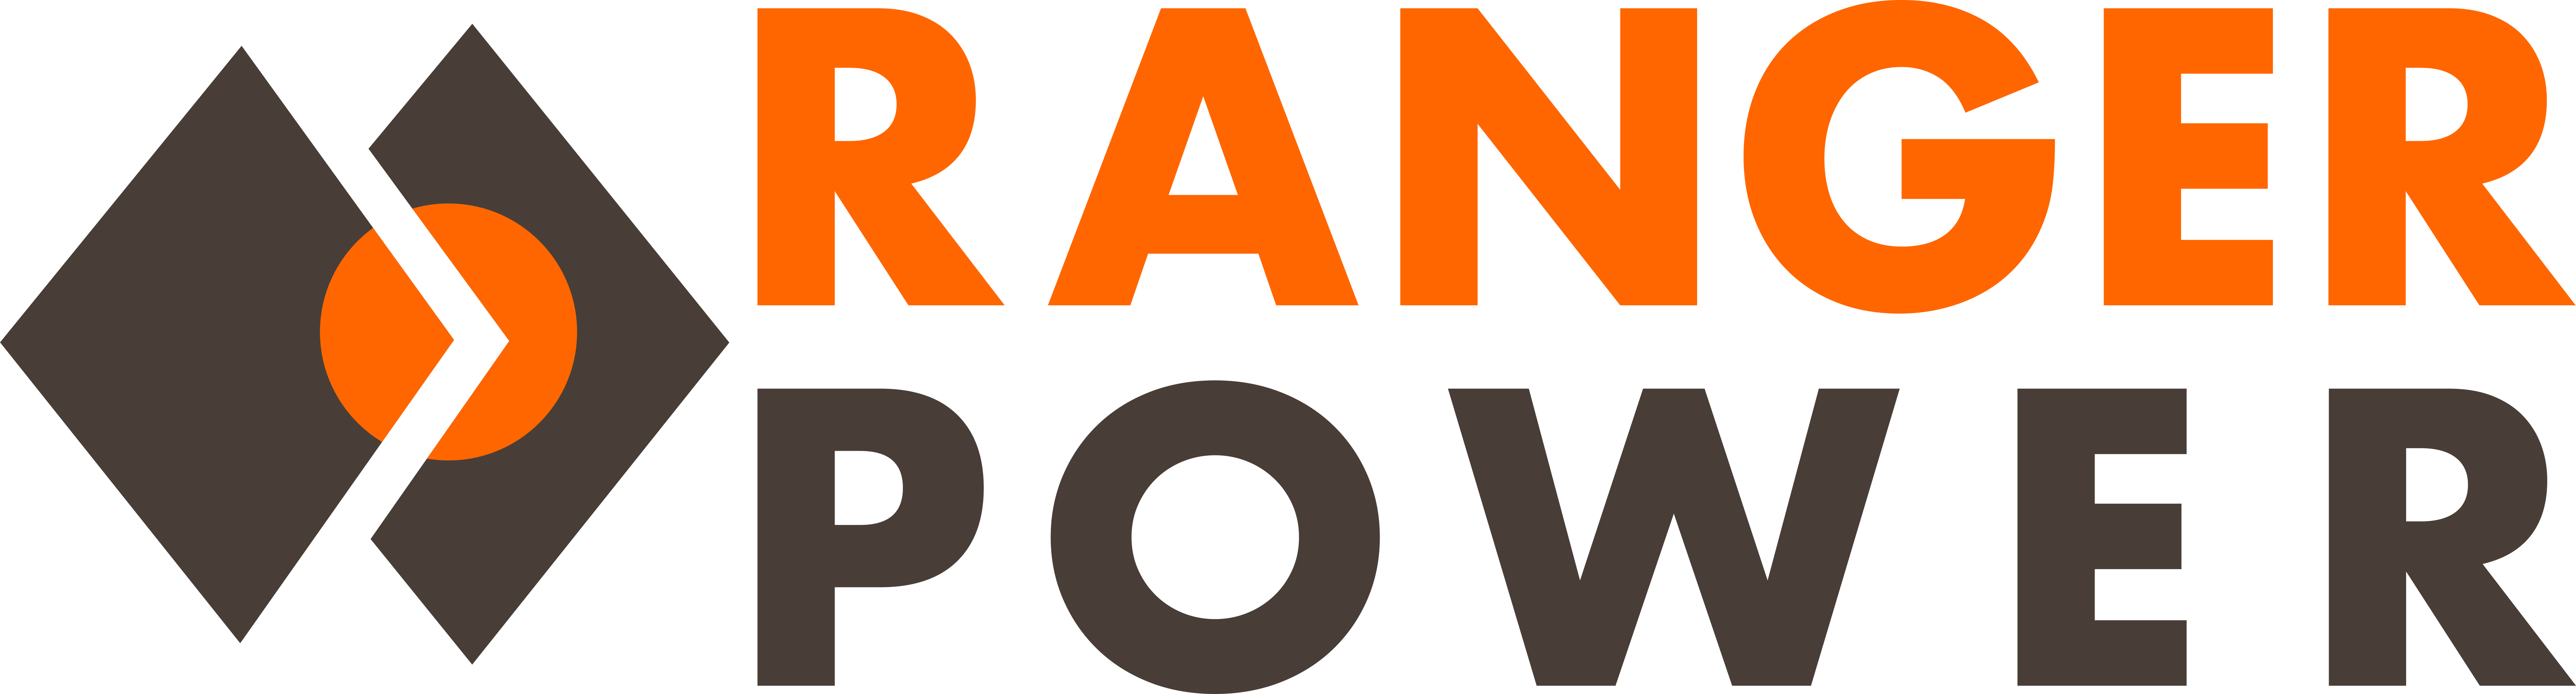 Ranger Power logo